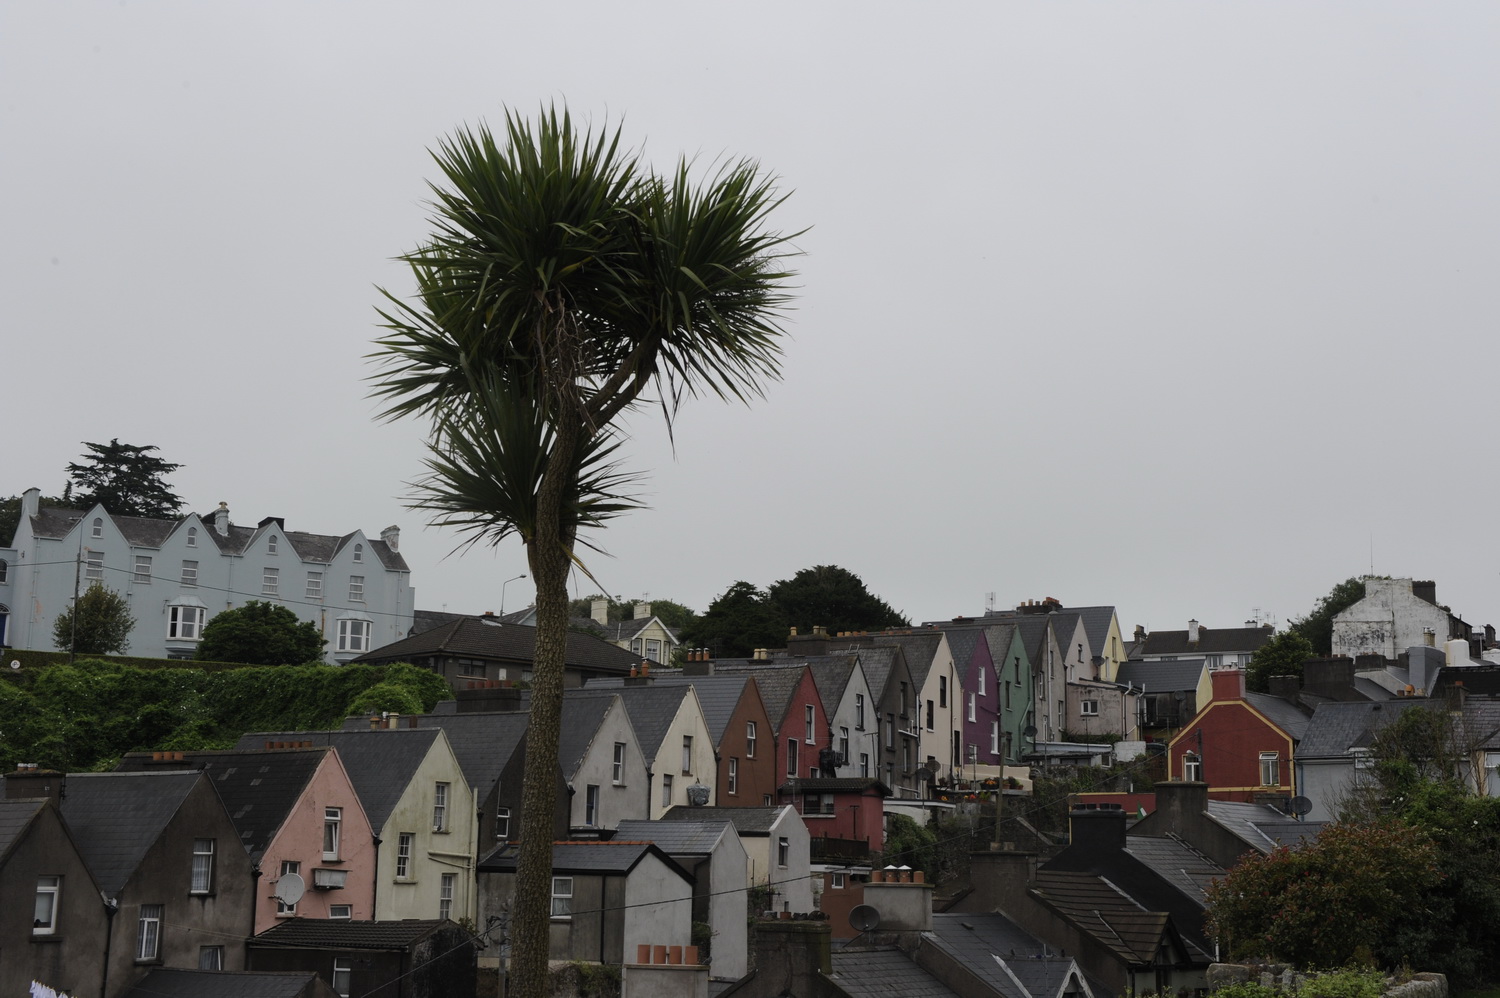 Dolph Kessler - Palmtrees of Ireland 